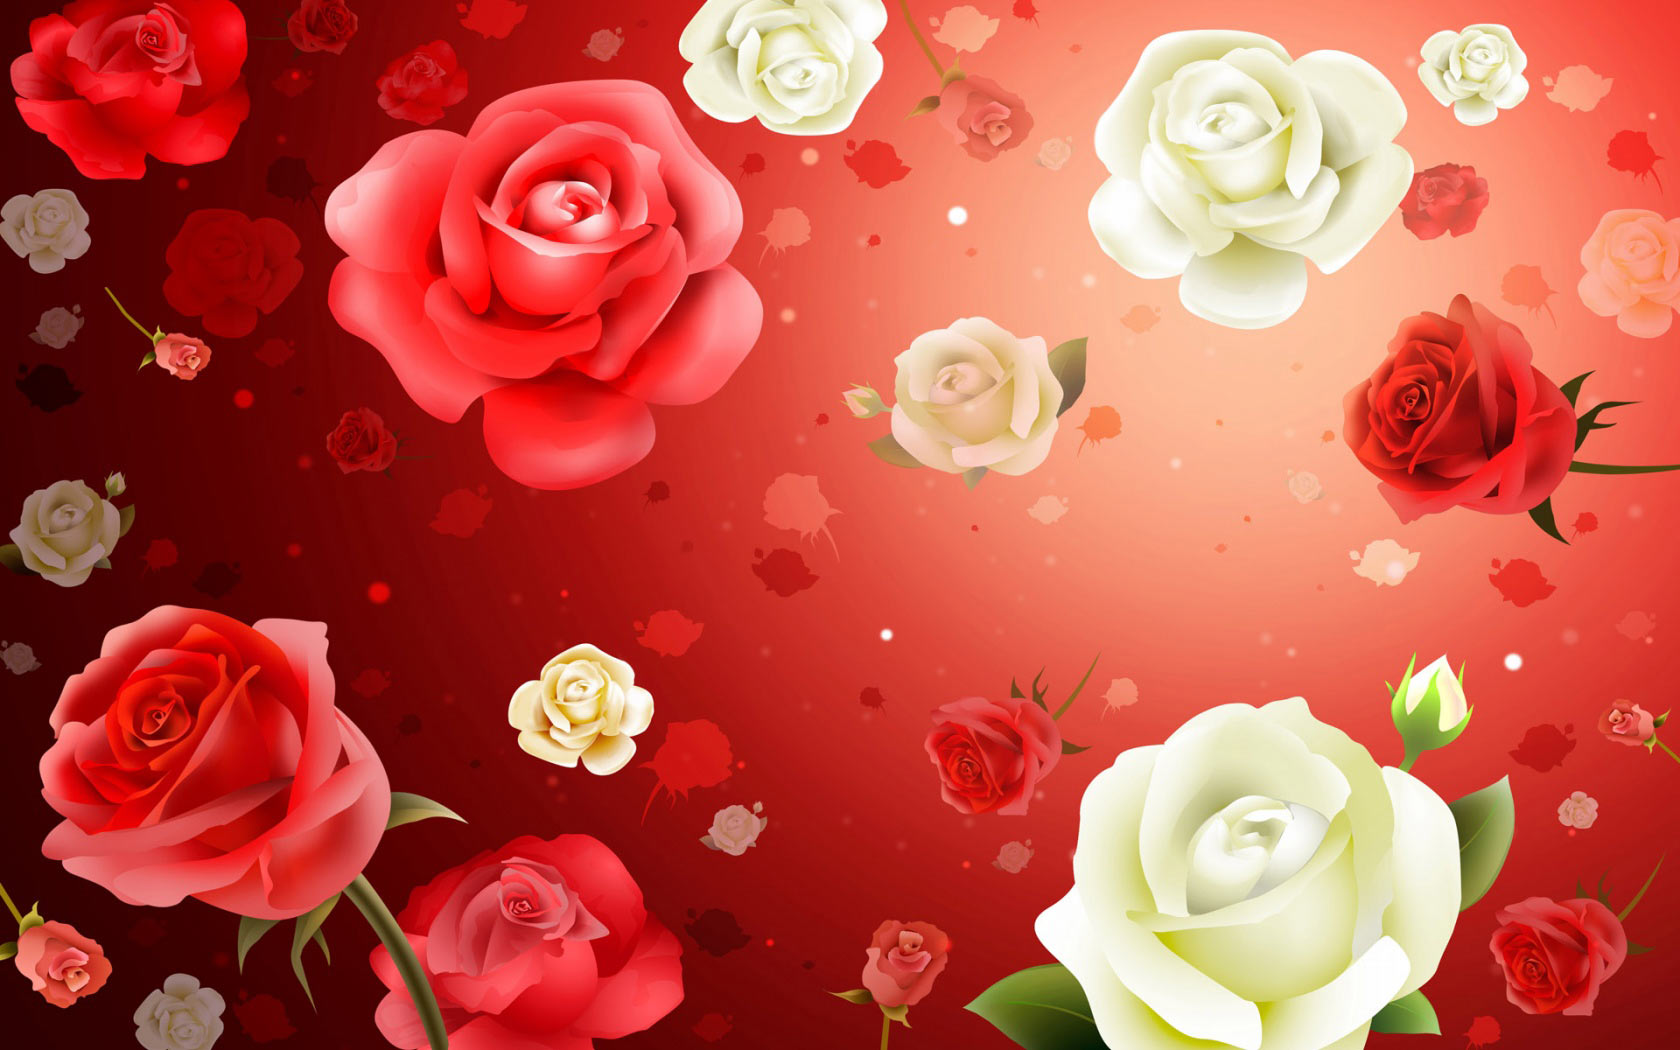 49+] Rose Flowers Wallpapers Free Download - WallpaperSafari